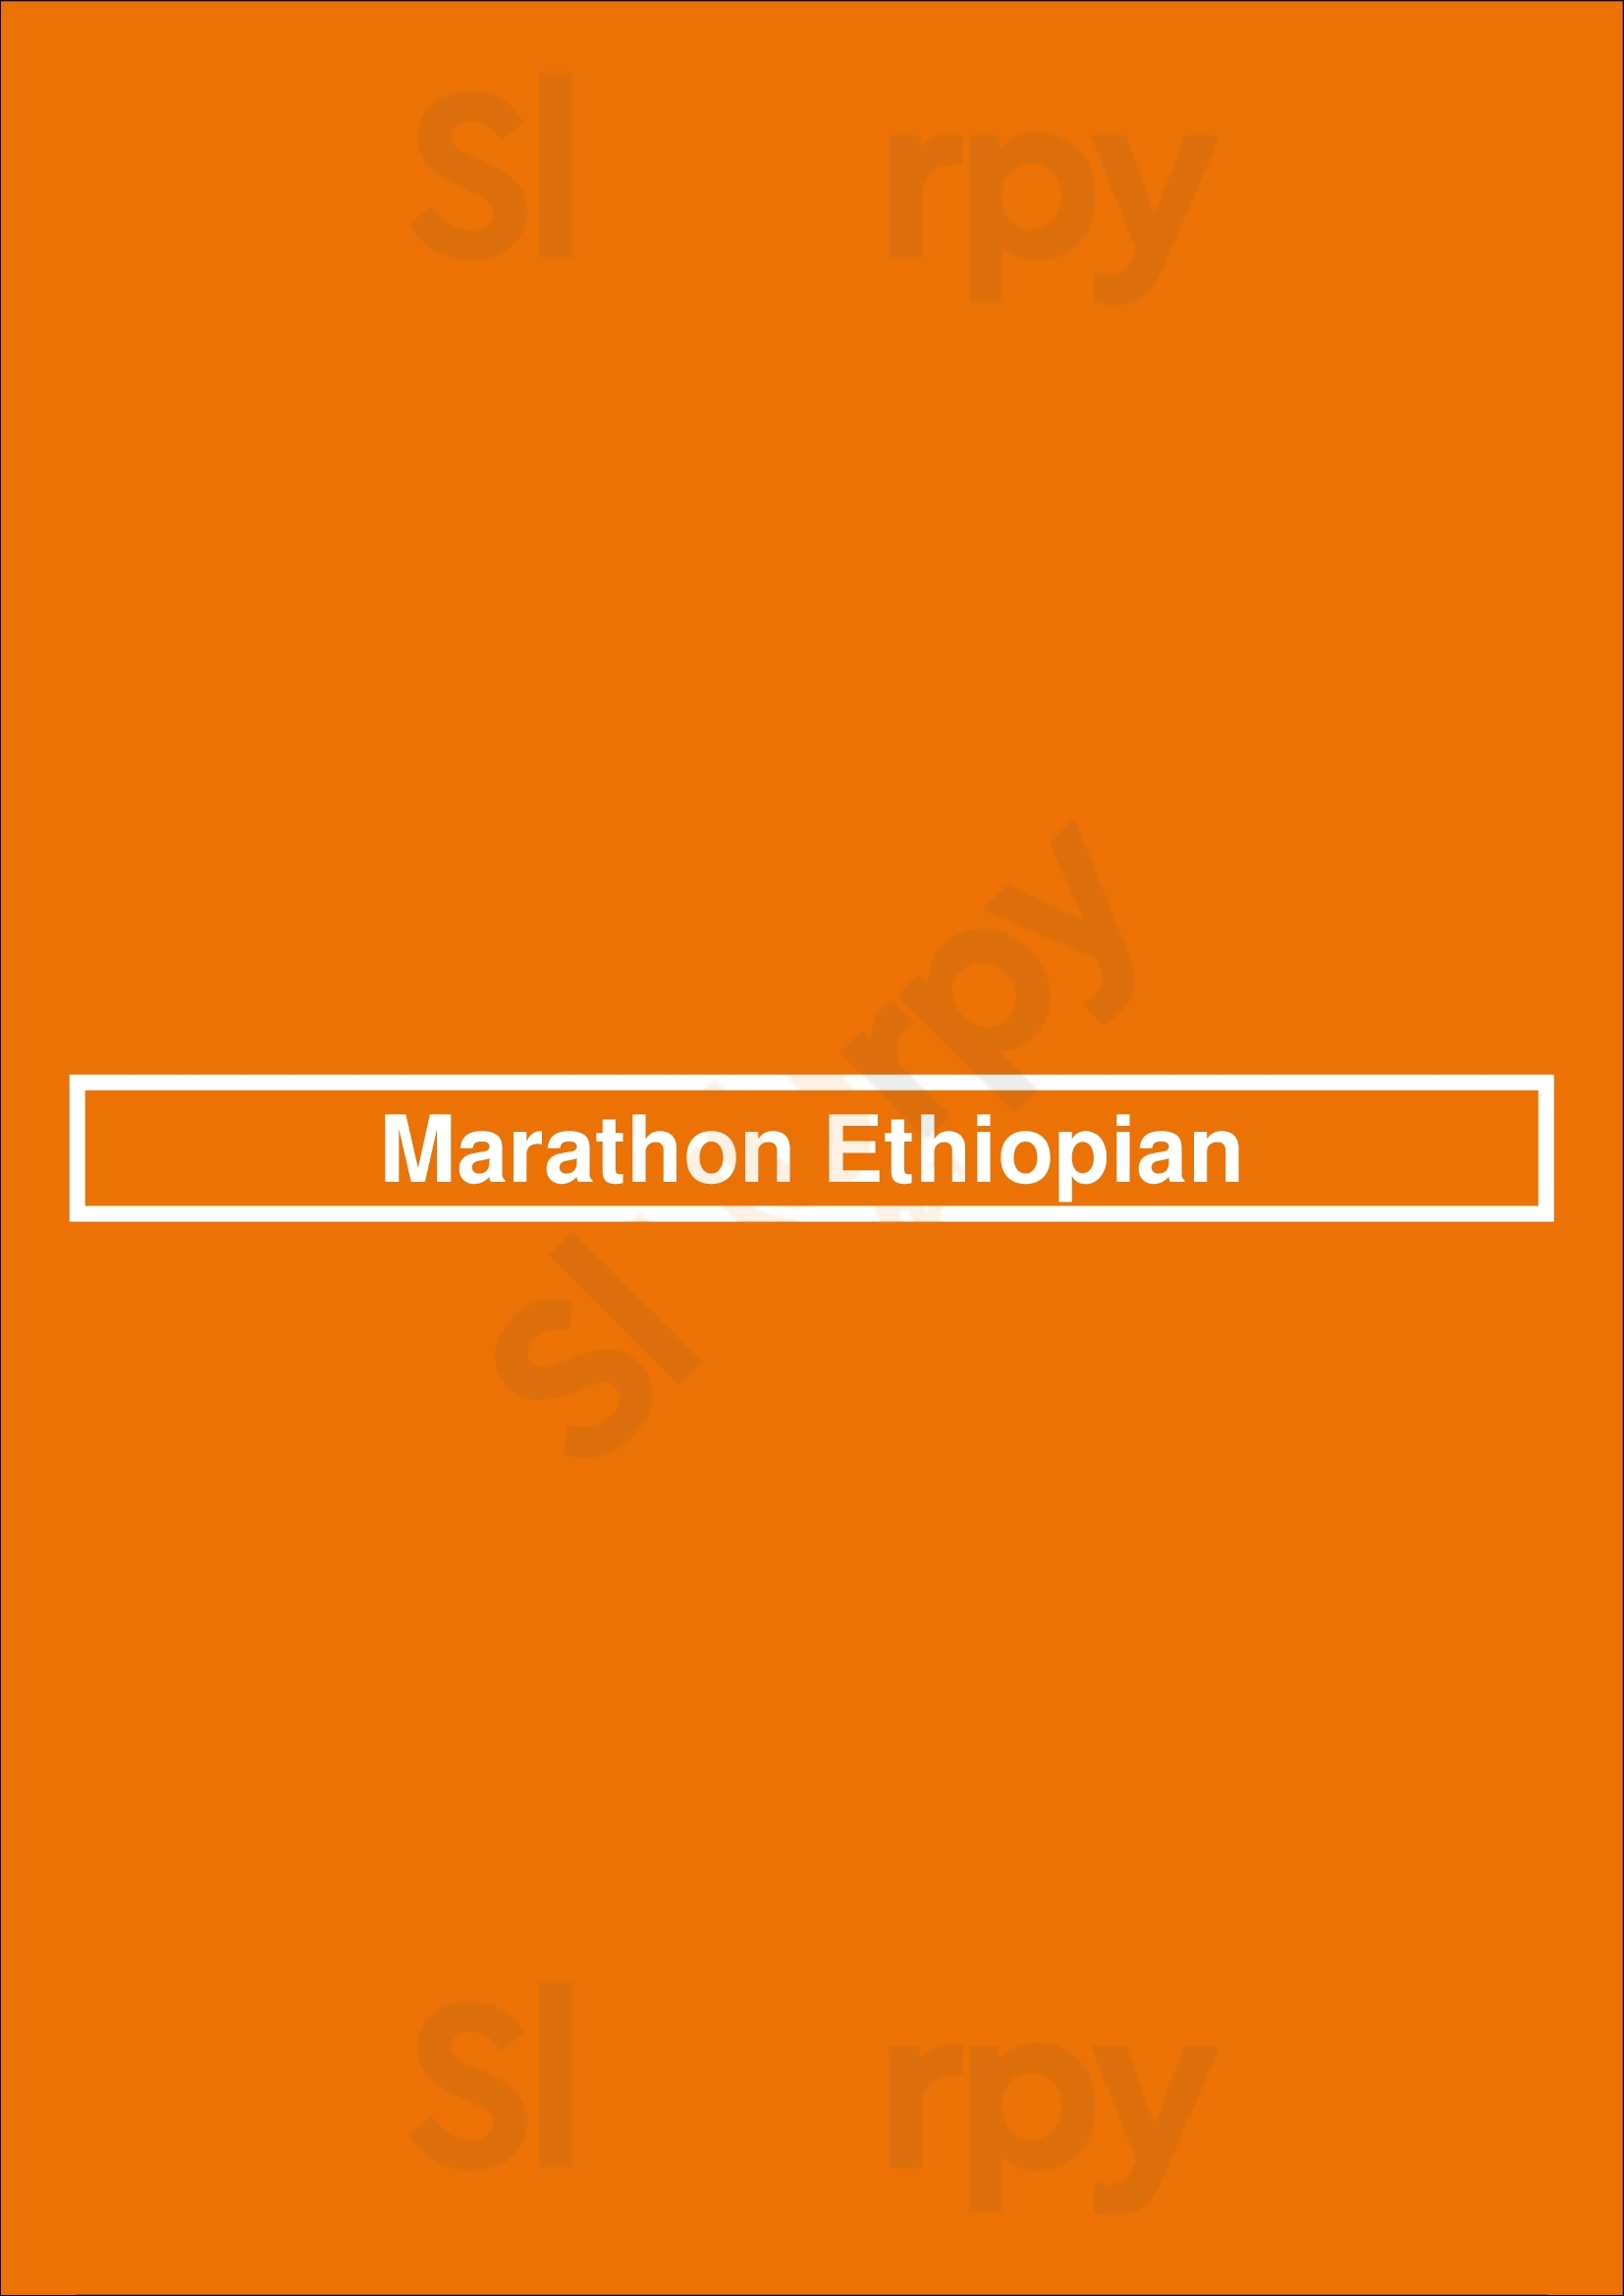 Marathon Ethiopian Calgary Menu - 1